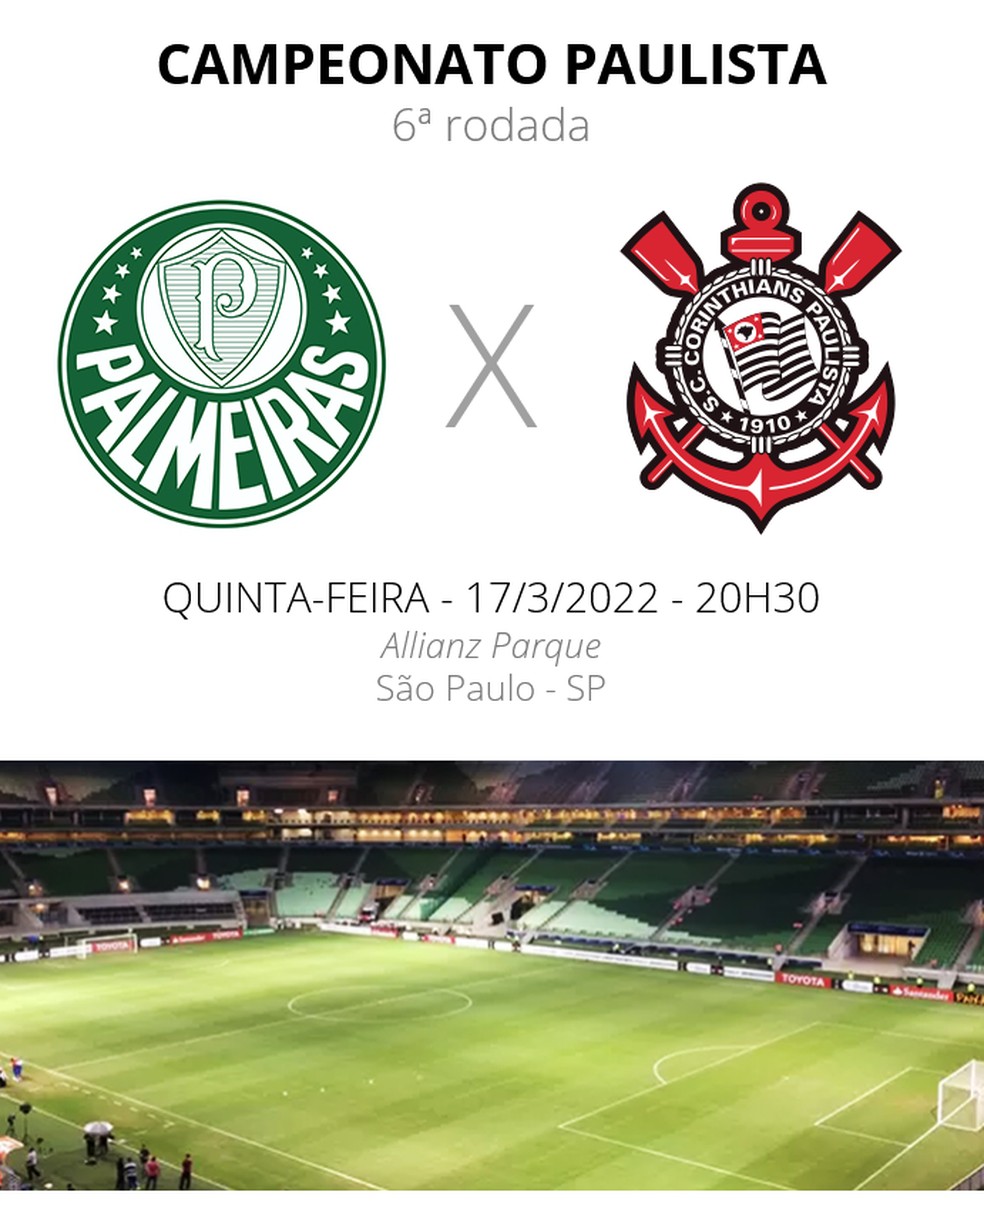 Como assistir Palmeiras x Corinthians Futebol AO VIVO Campeonato Paulista  2020 Fute Max